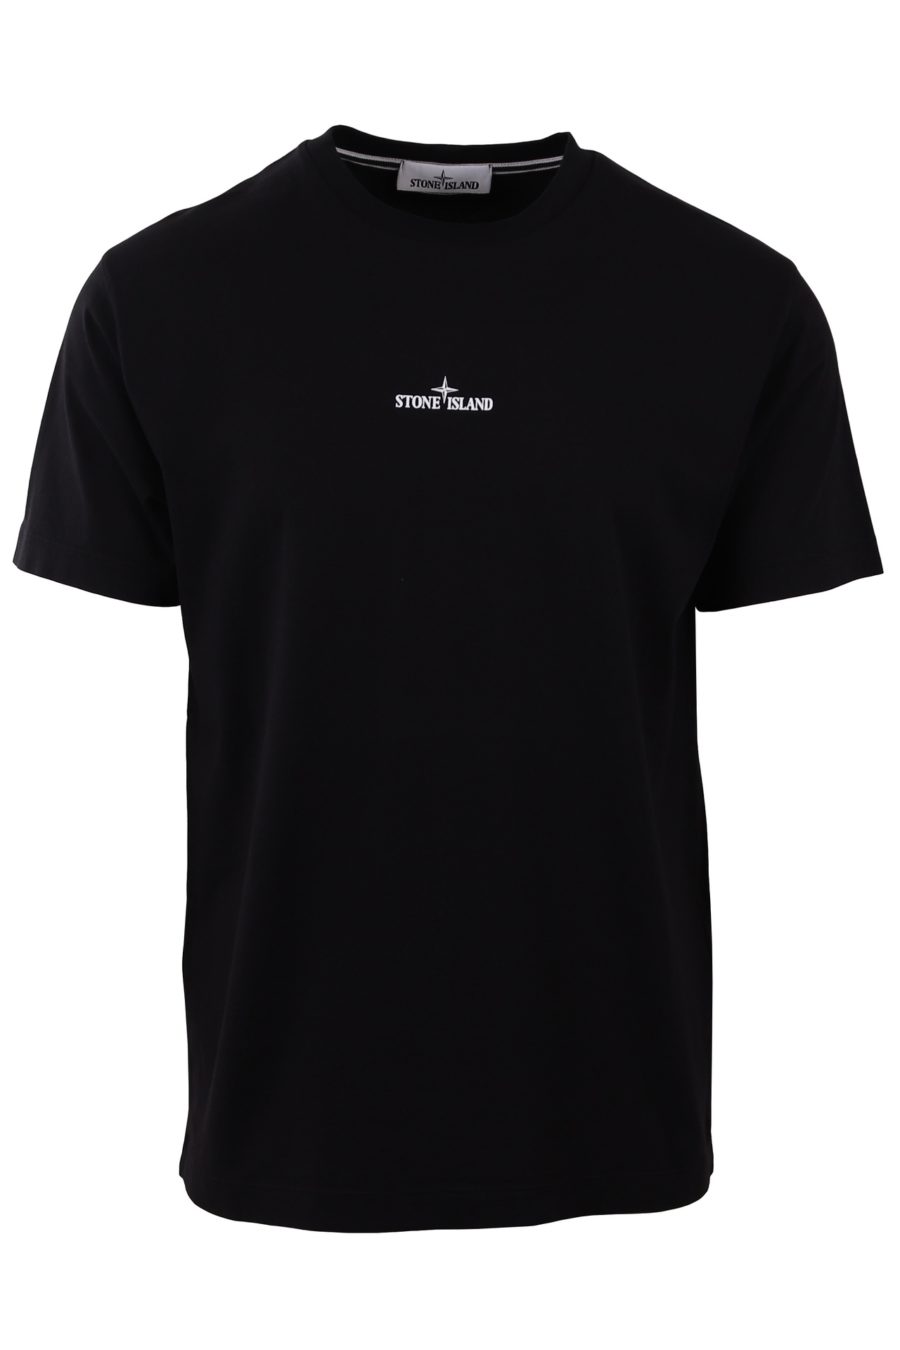 T-shirt Stone Island noir avec petit logo - 484ec5245b02be6e1766d9ccbe2ce30e5fd79b44